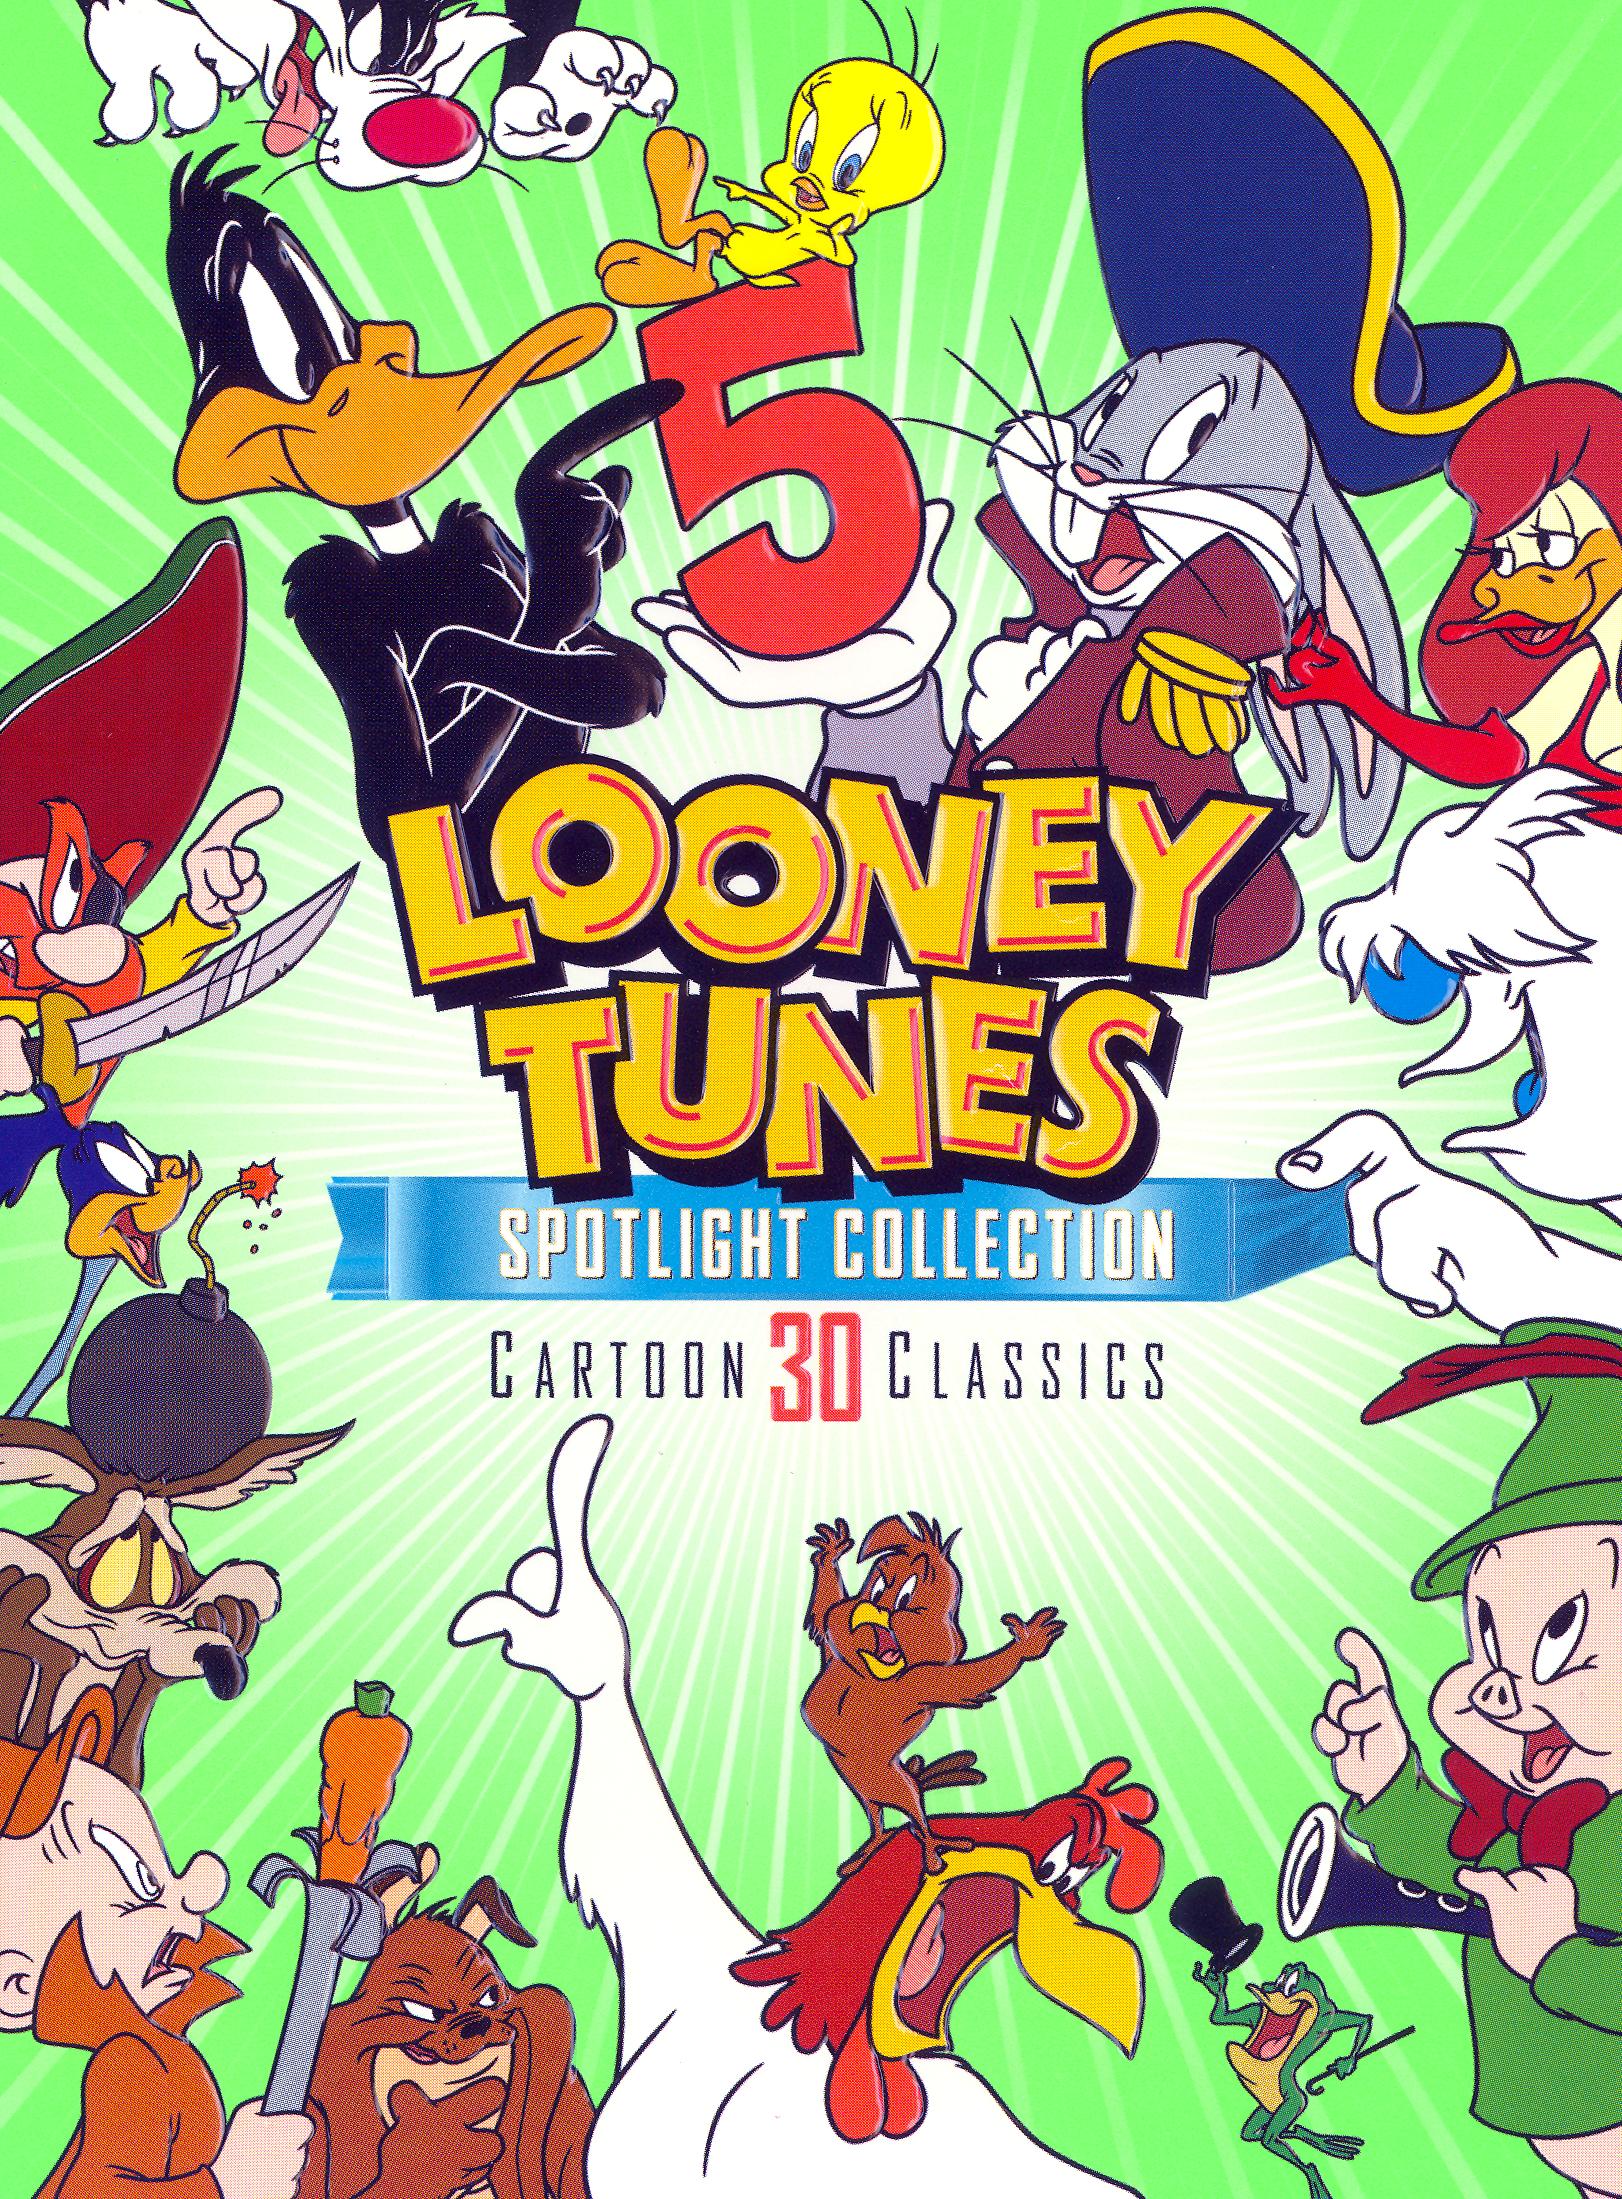 Looney Tunes Spotlight Collection Vol 5 2 Discs Dvd Best Buy